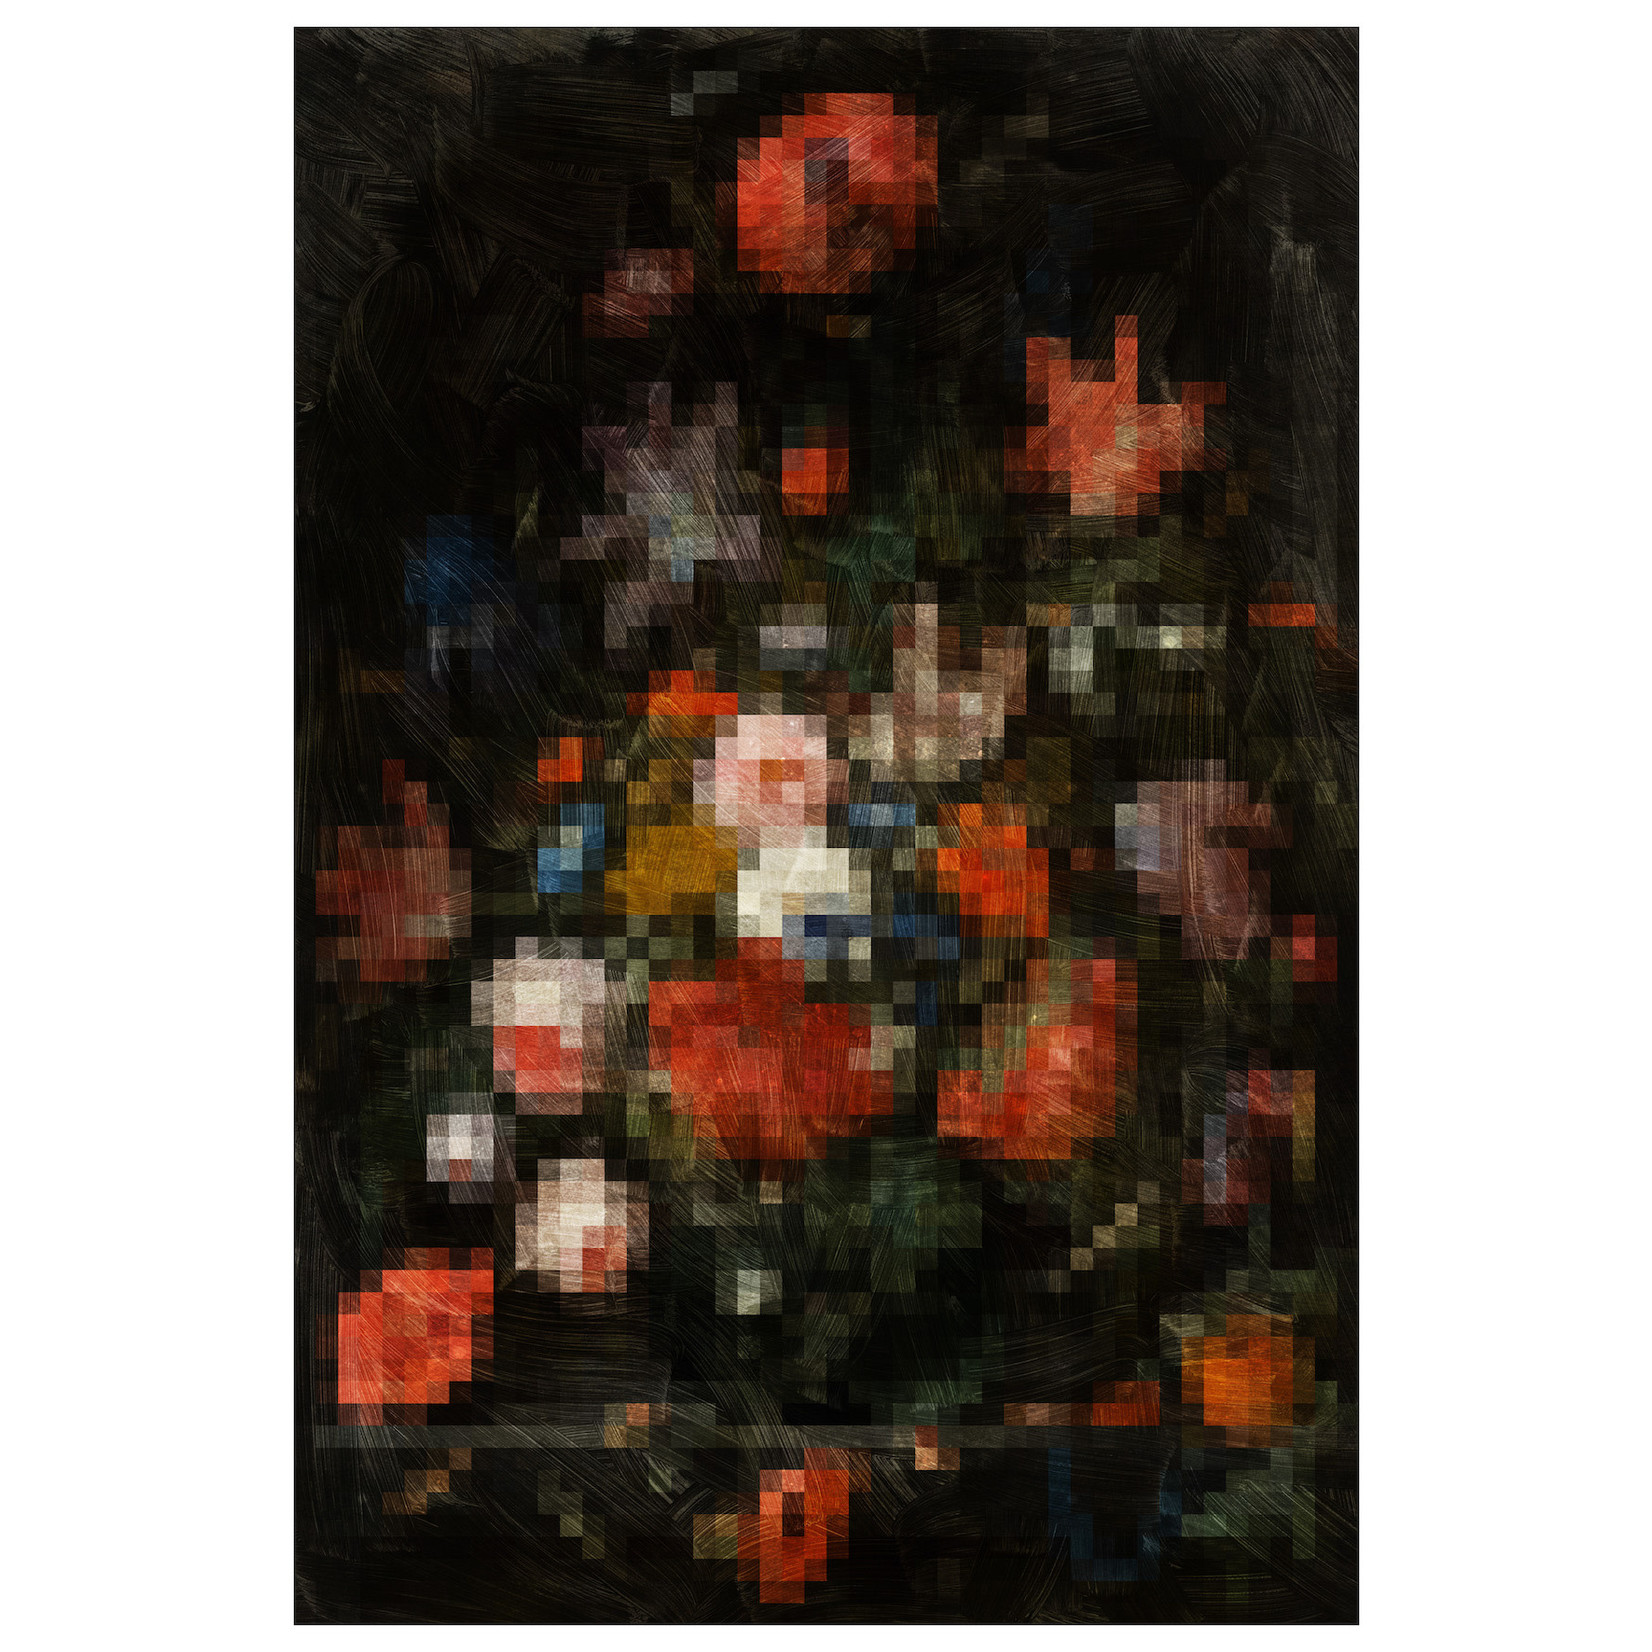 Framed Print on Rag Paper: Pixel Mignon 1 by Francesco Alessandrini